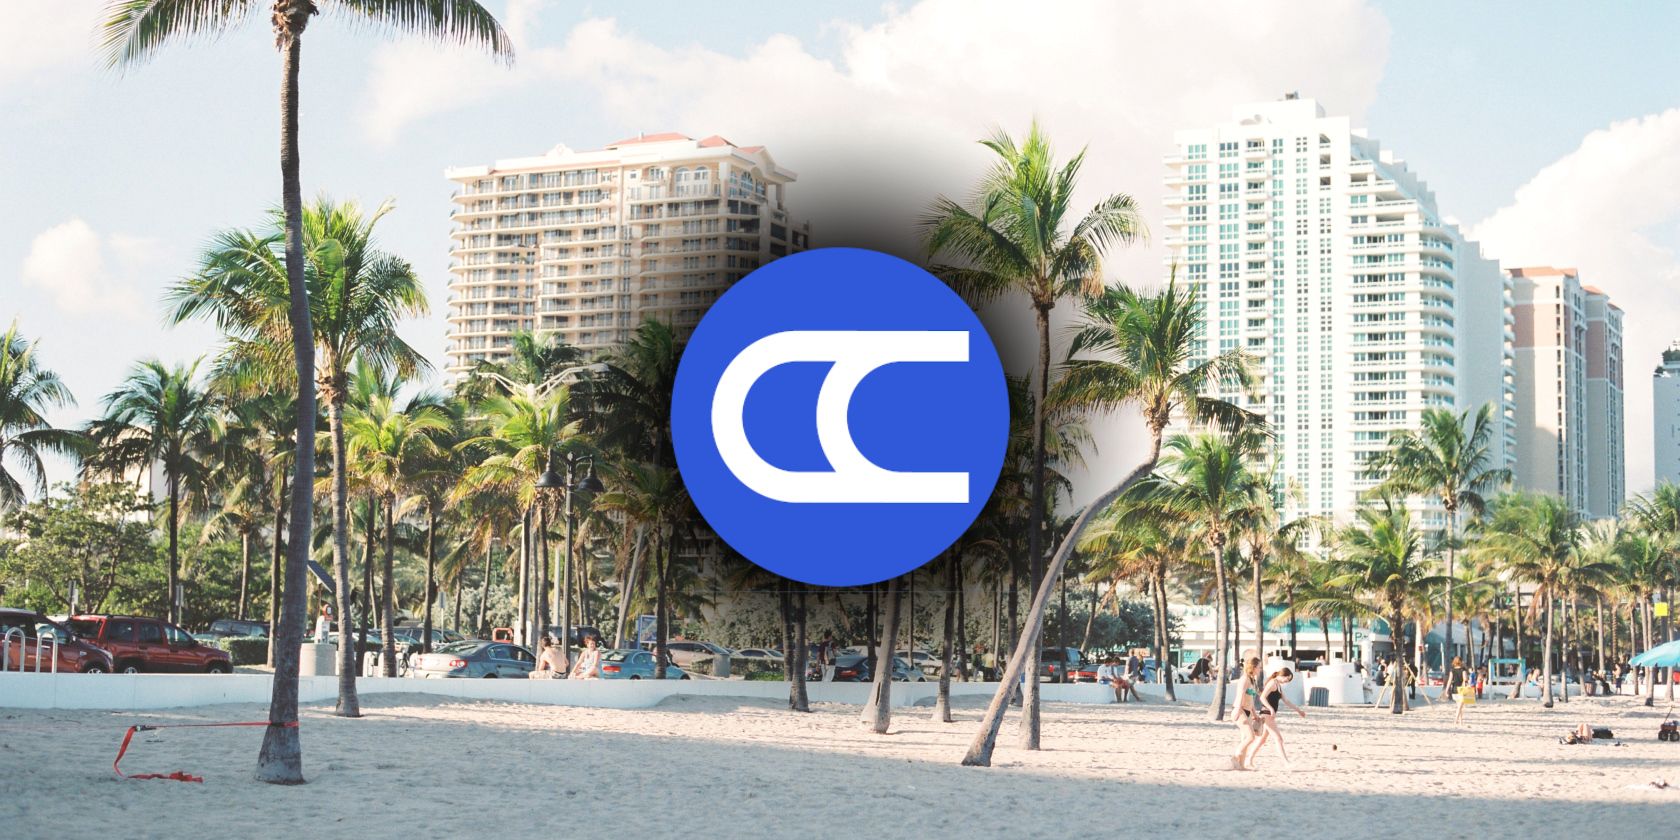 citycoins logo on miami beach background feature